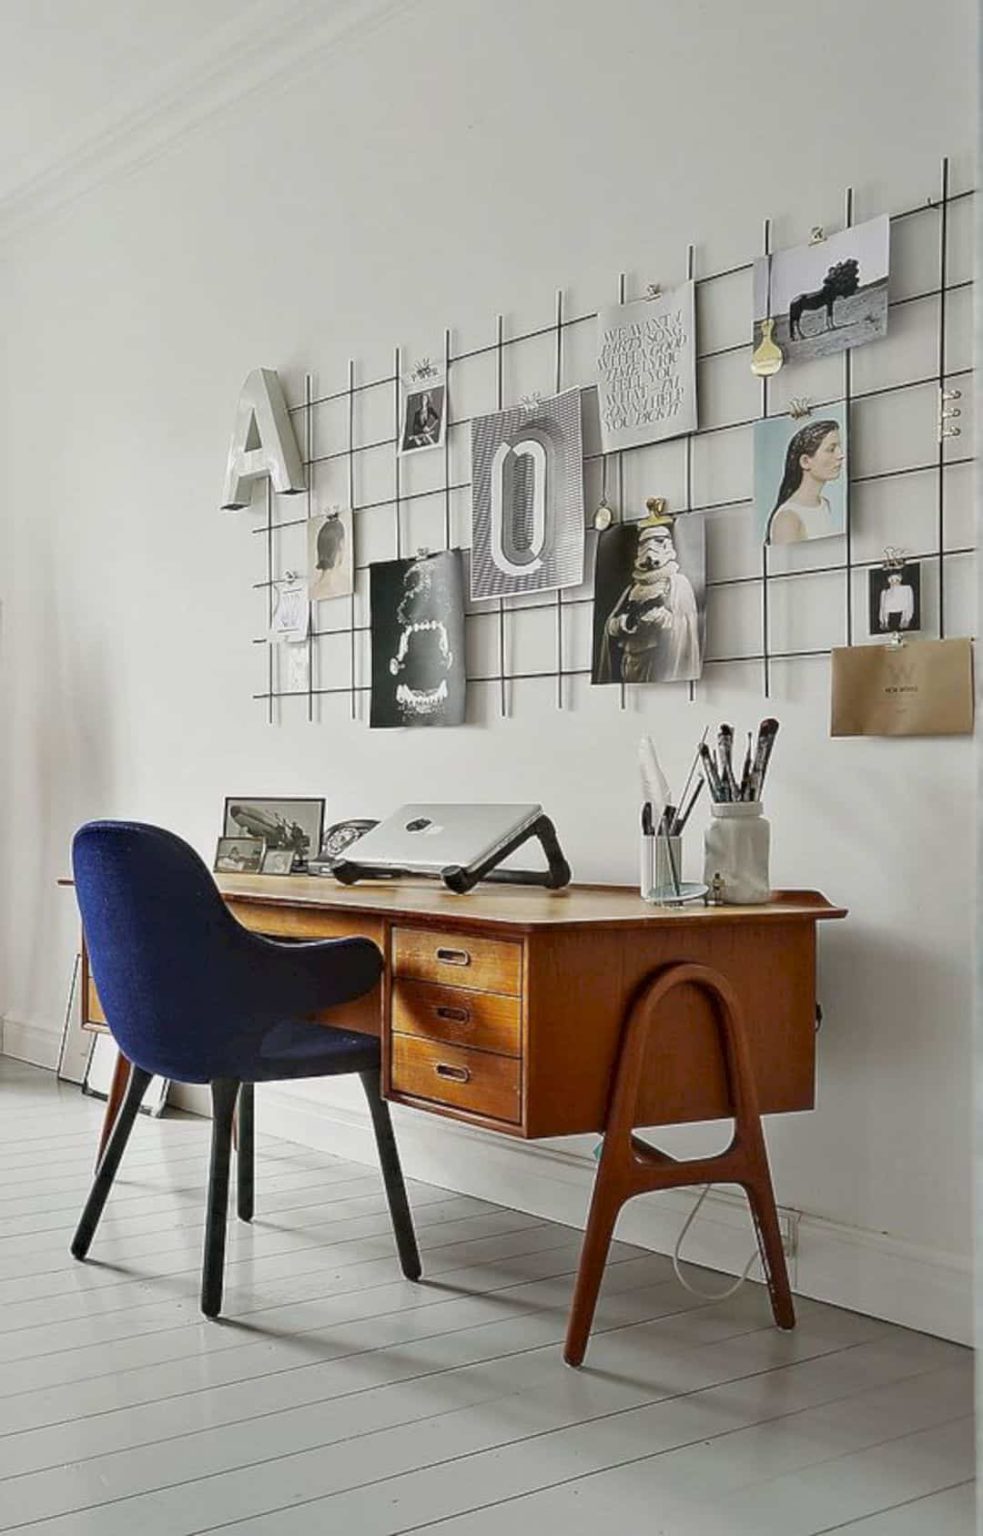 Office Wall Decor Ideas - BEST HOME DESIGN IDEAS